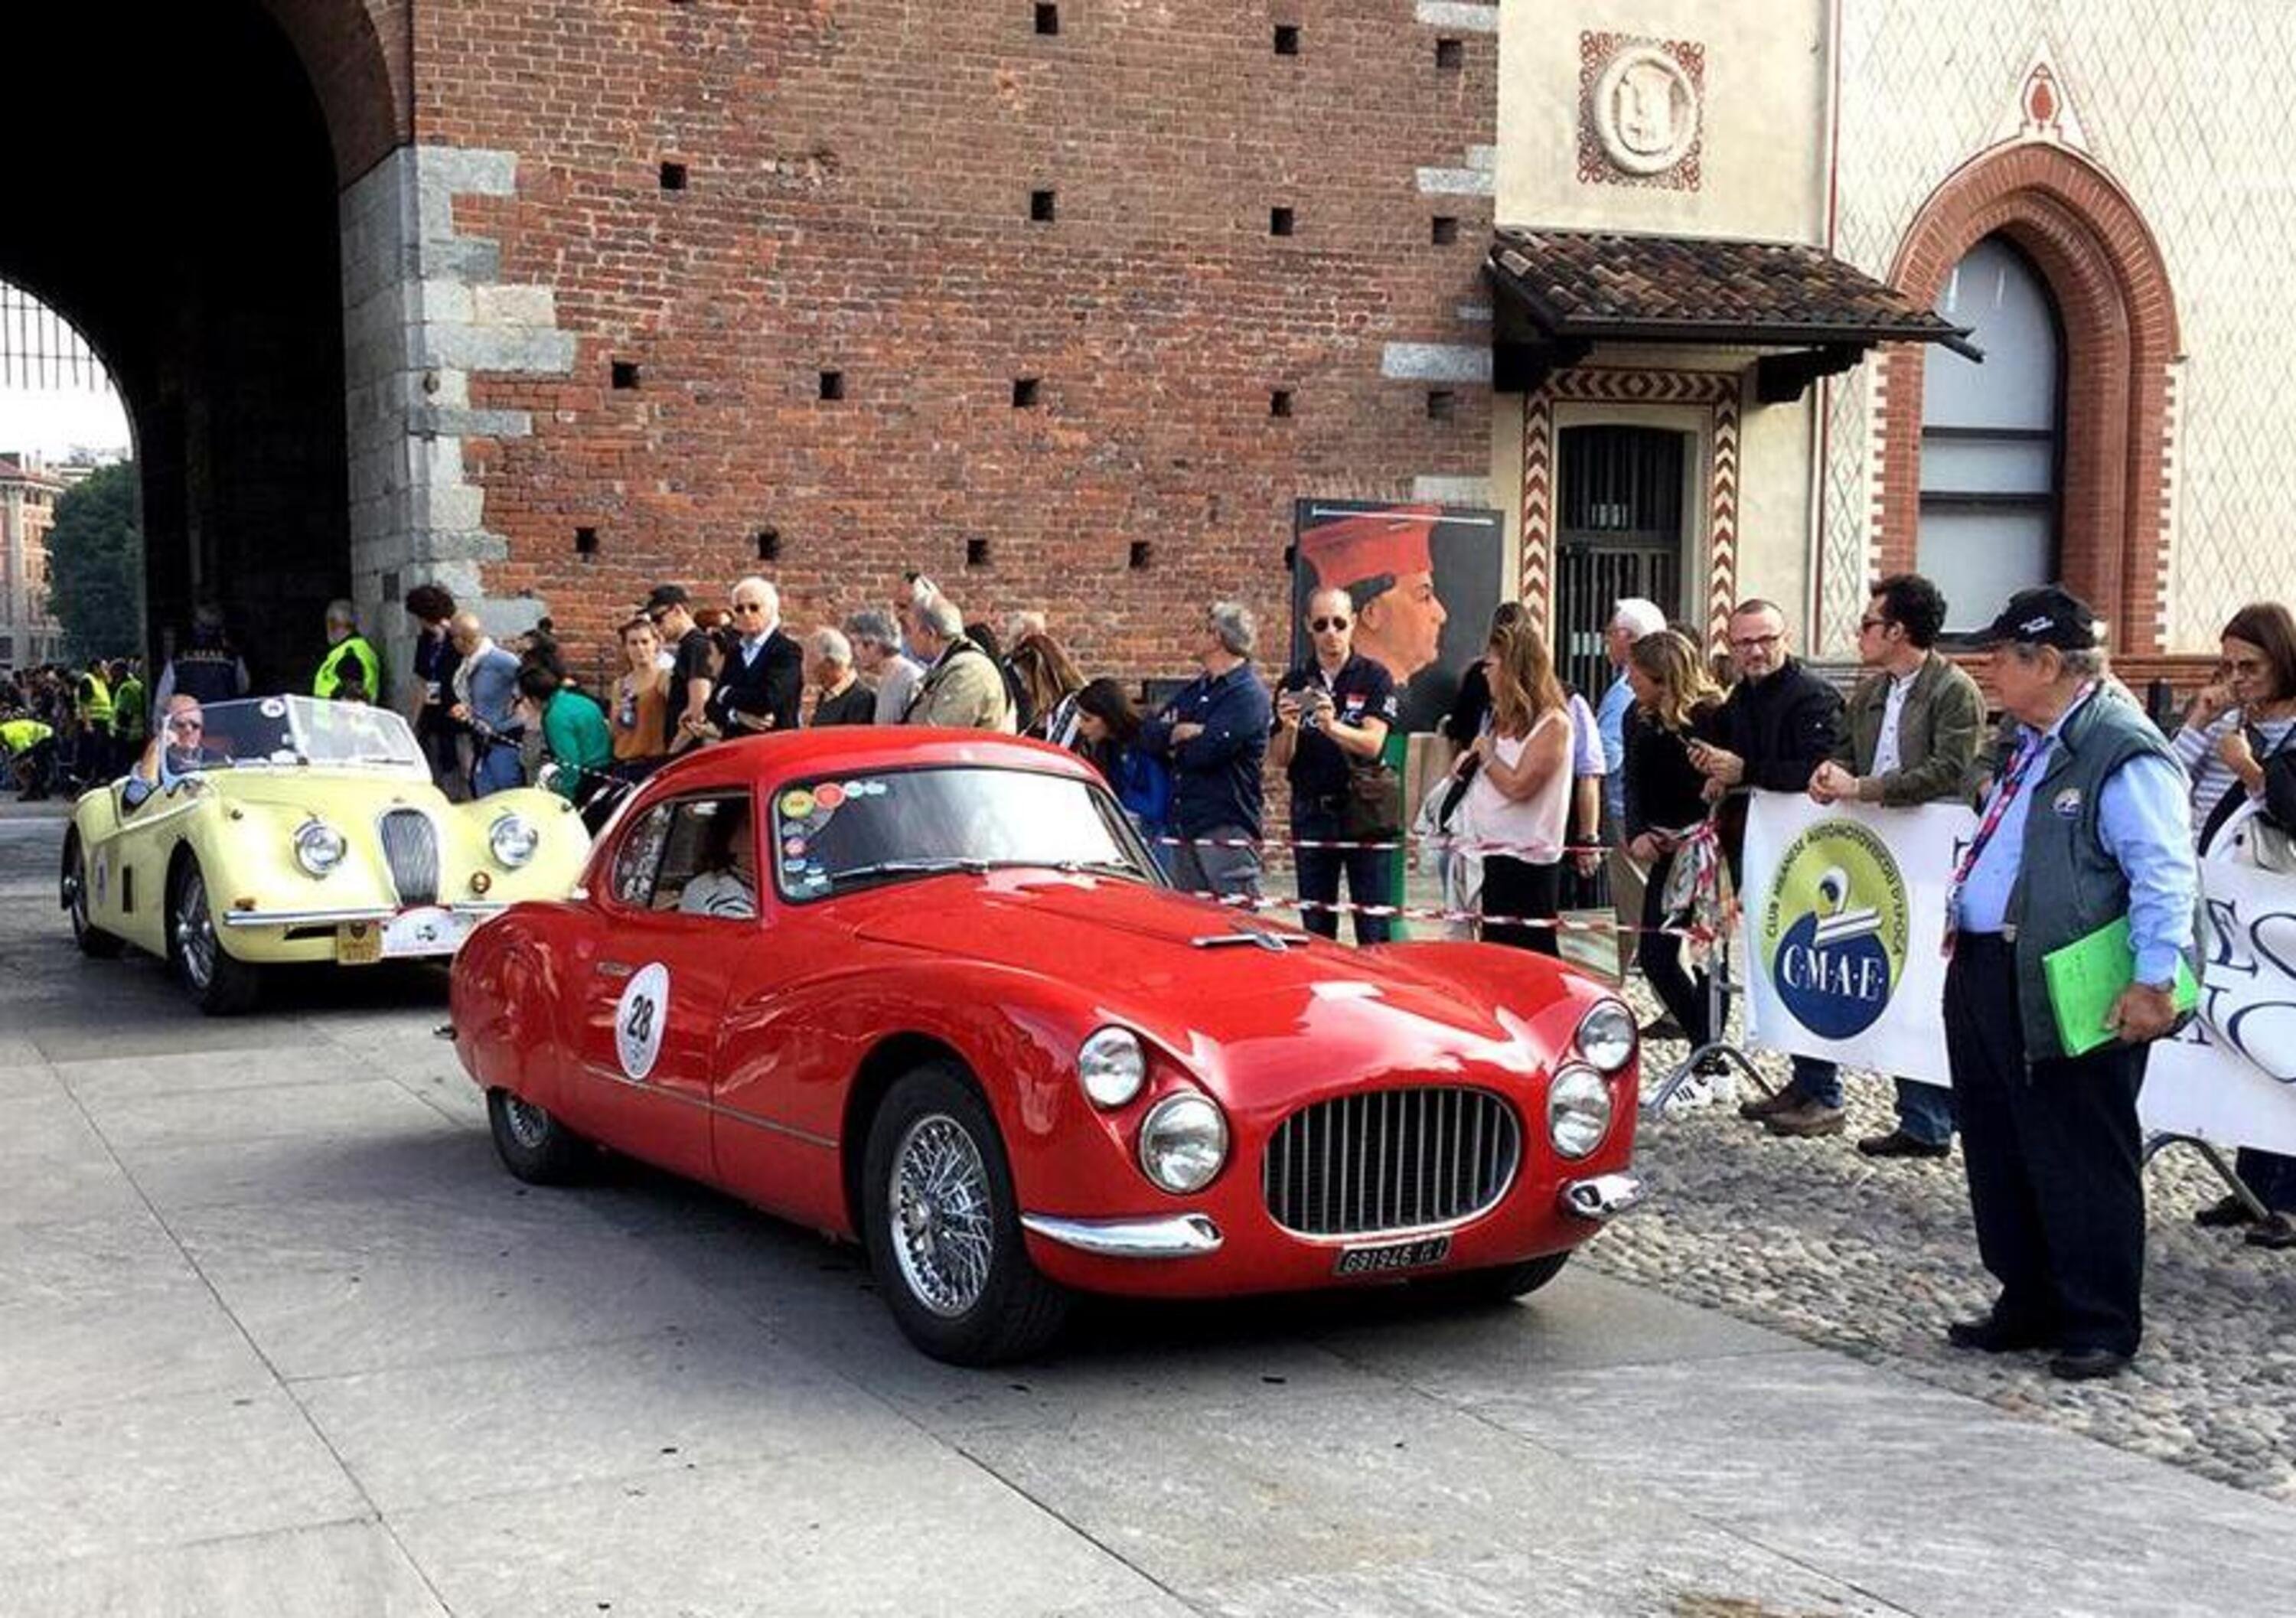 Milano: le auto storiche &ldquo;Over 40&rdquo; possono circolare